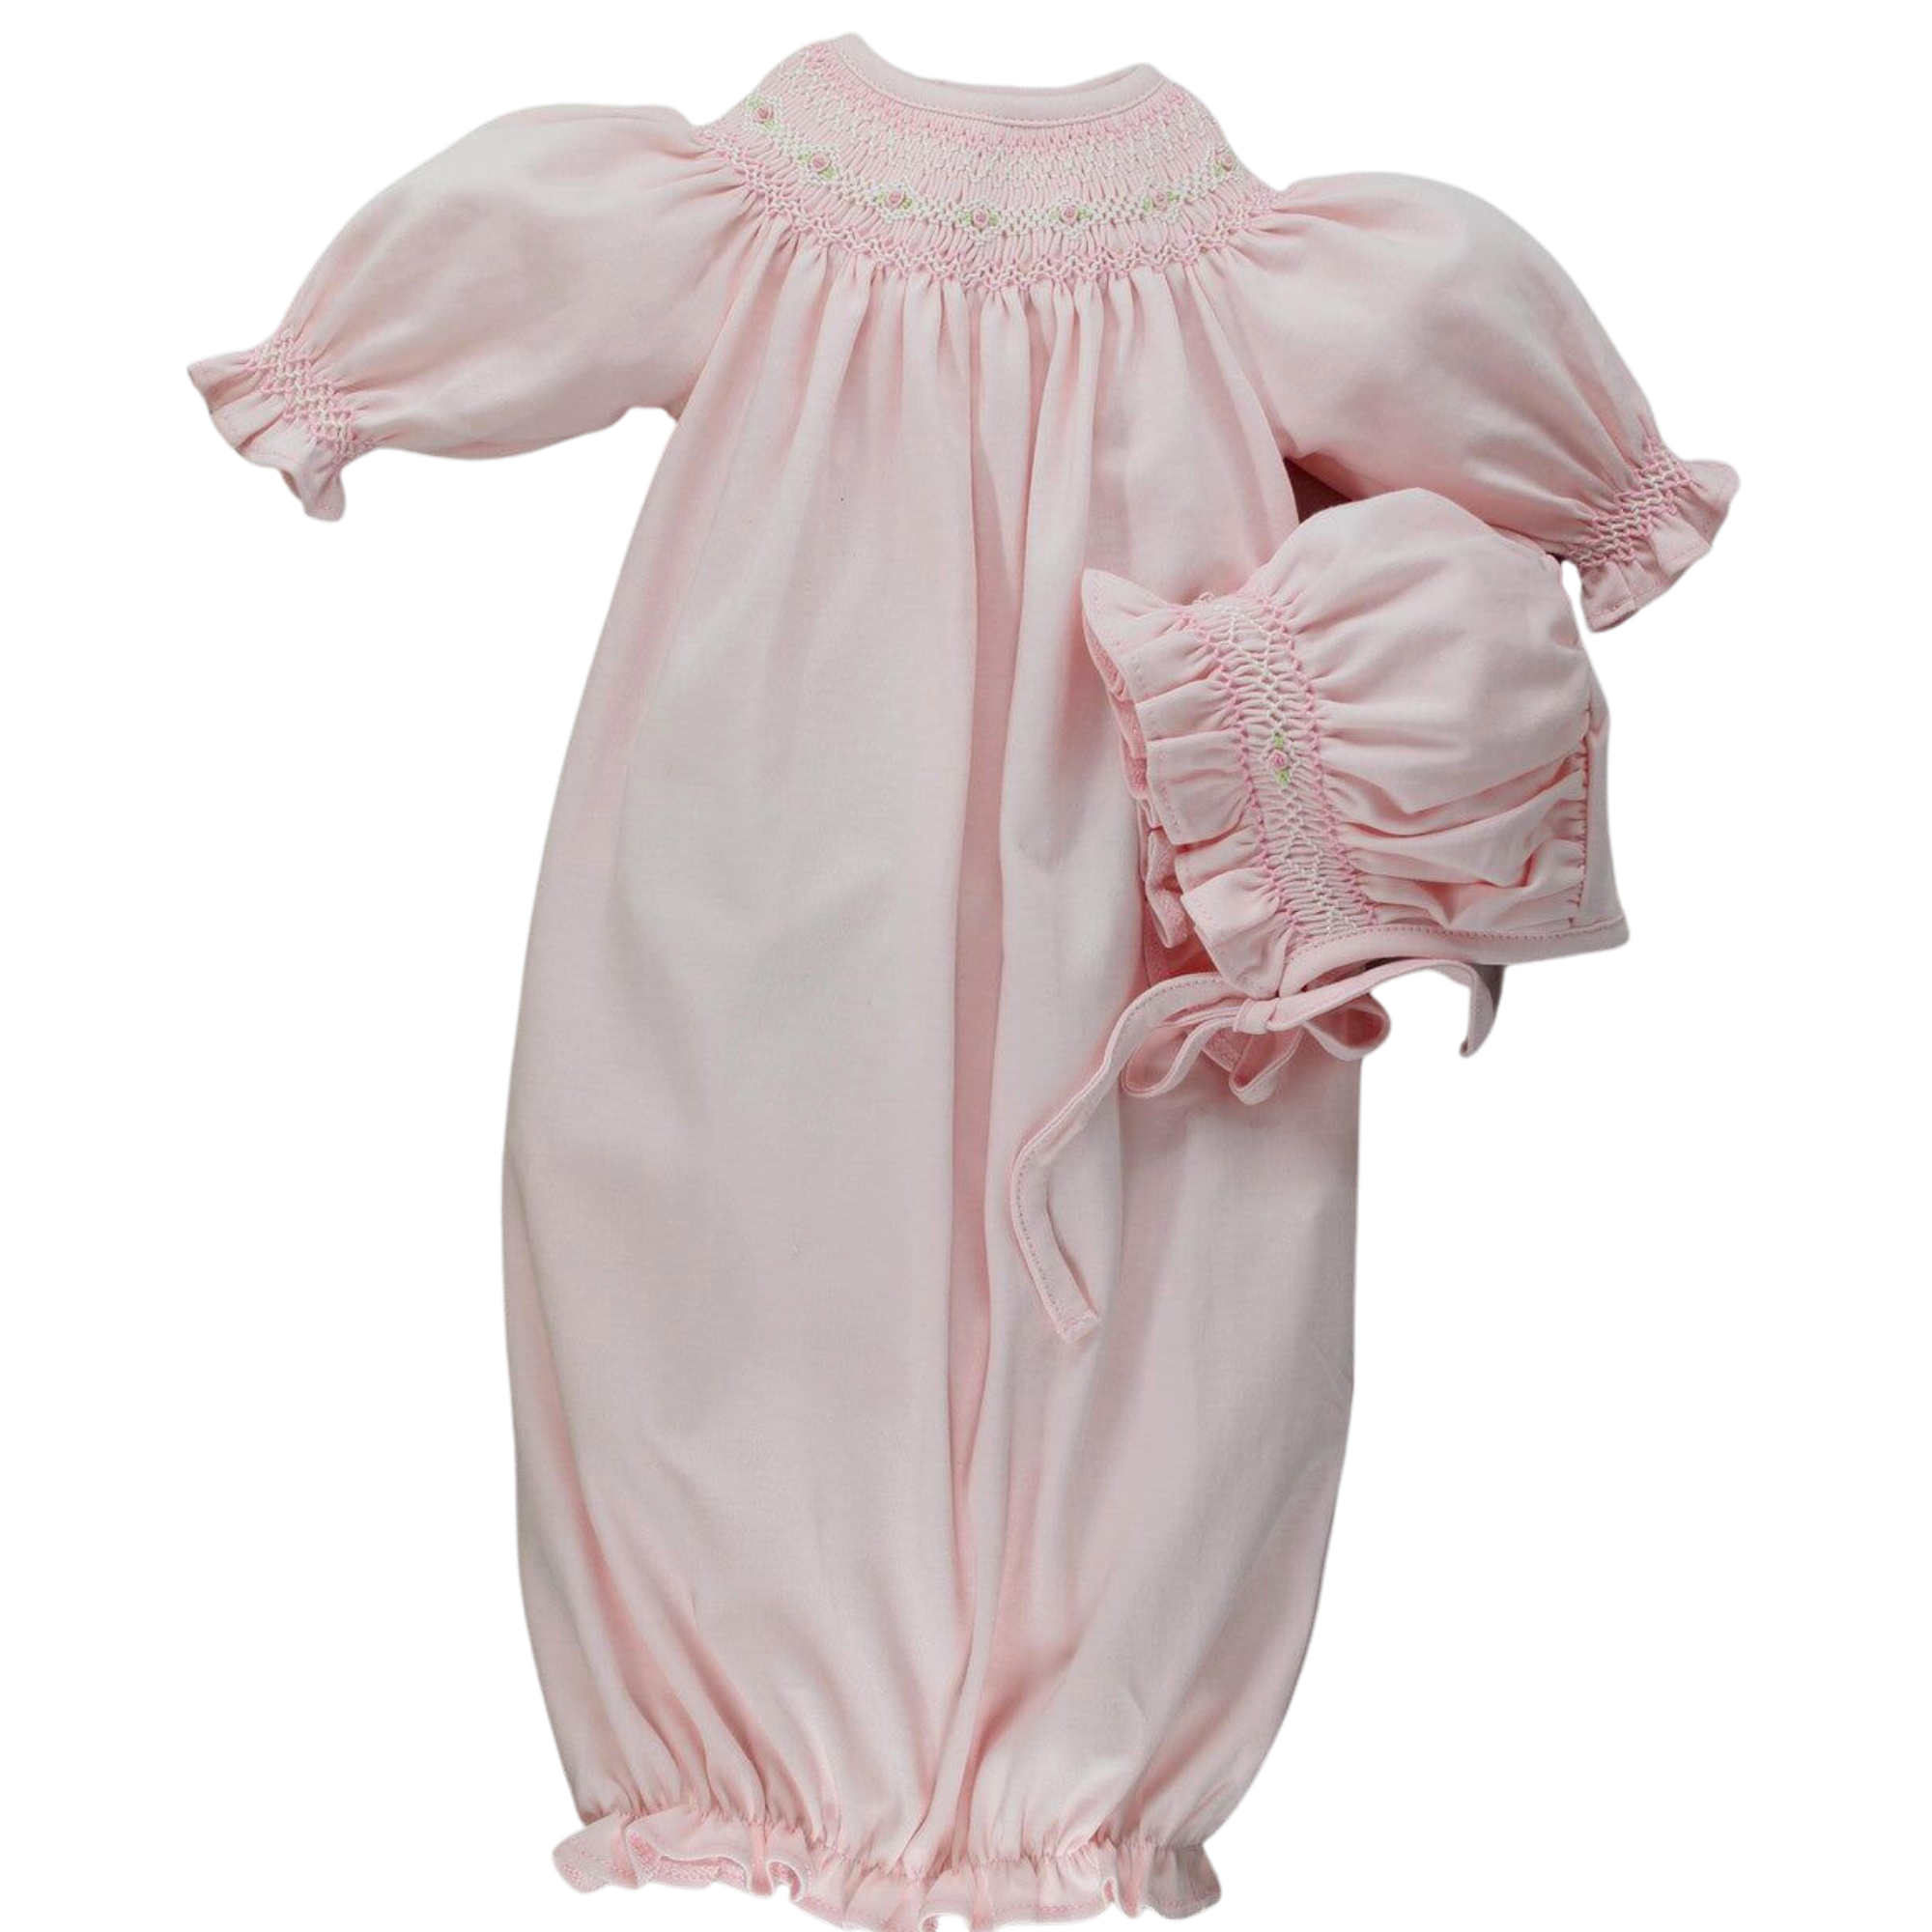 Buy Rajeraj Cotton Woman's/Girl Nightwear/Sleepwear/Nighty Night Gown Home  & Casual Dress-06 Brown at Amazon.in